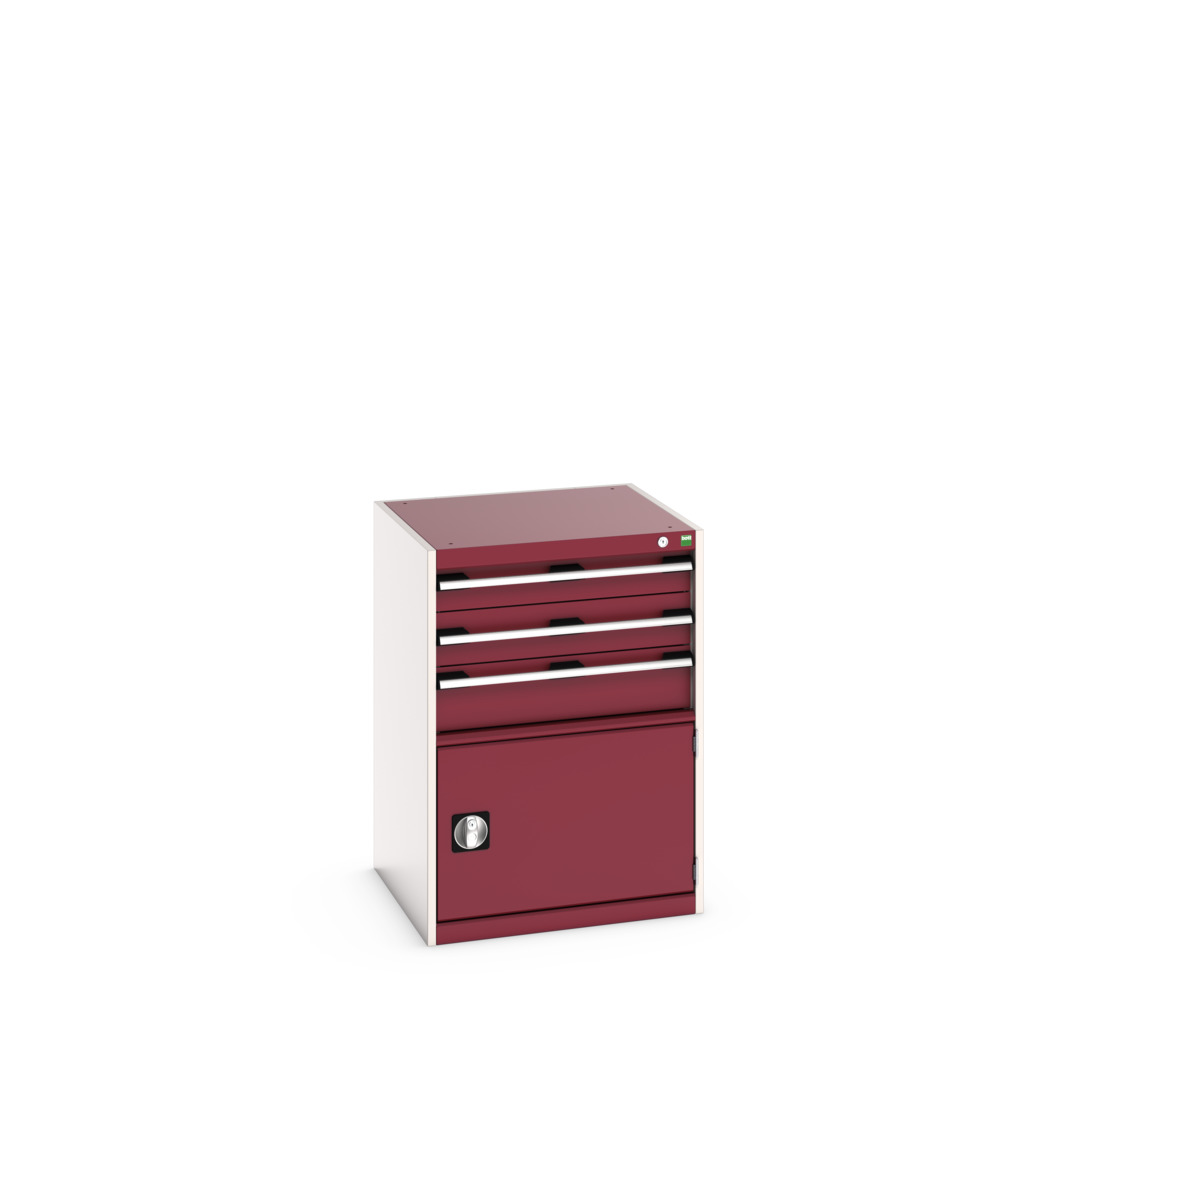 40019043.24V - cubio drawer-door cabinet